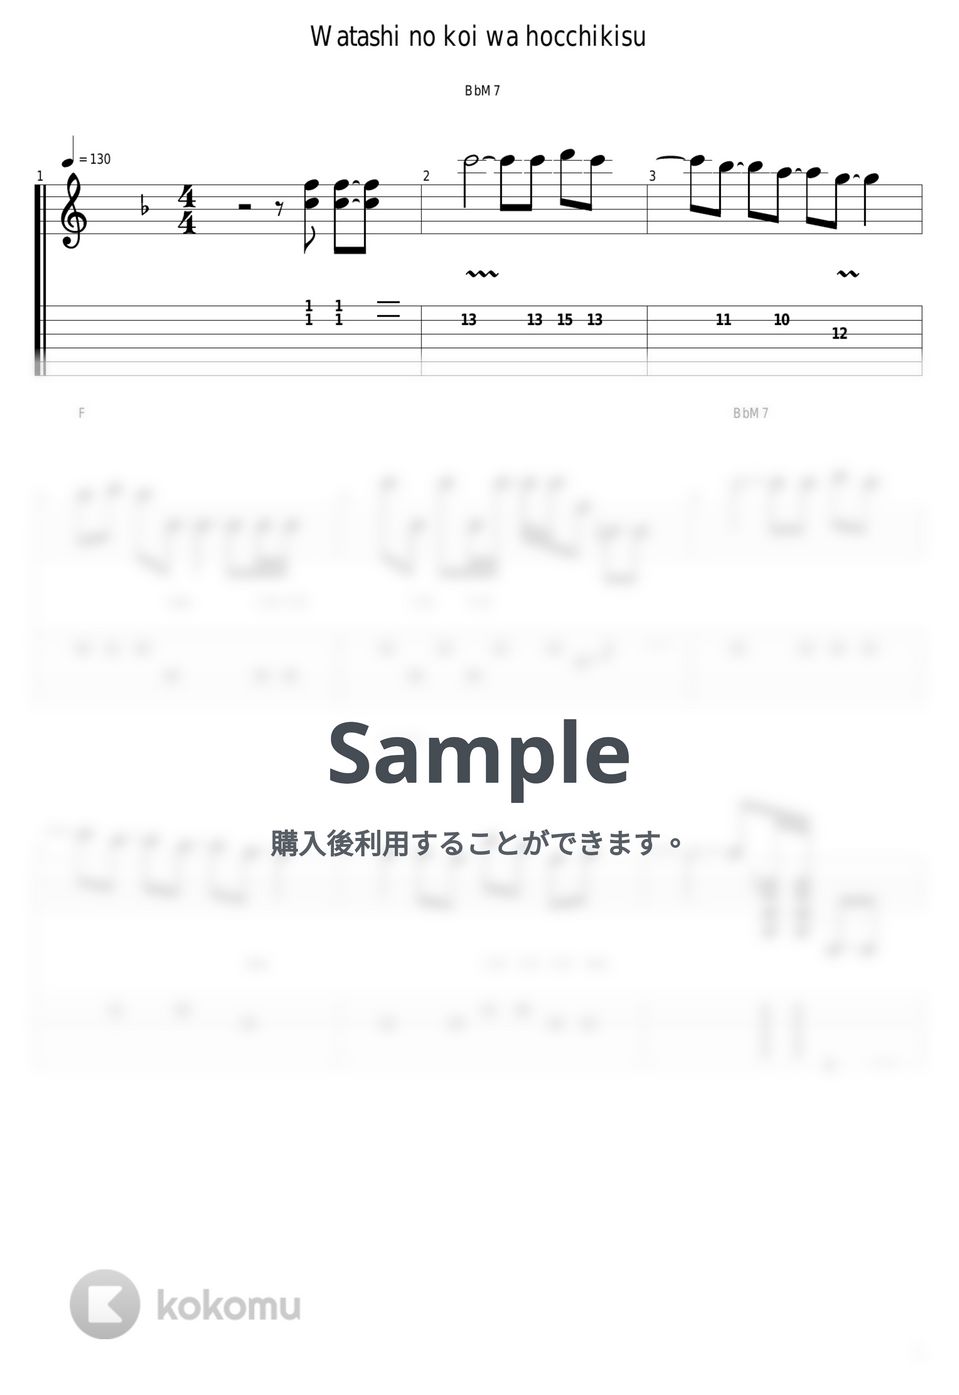 放課後ティータイム - 私の恋はホッチキス by guitar cover with tab